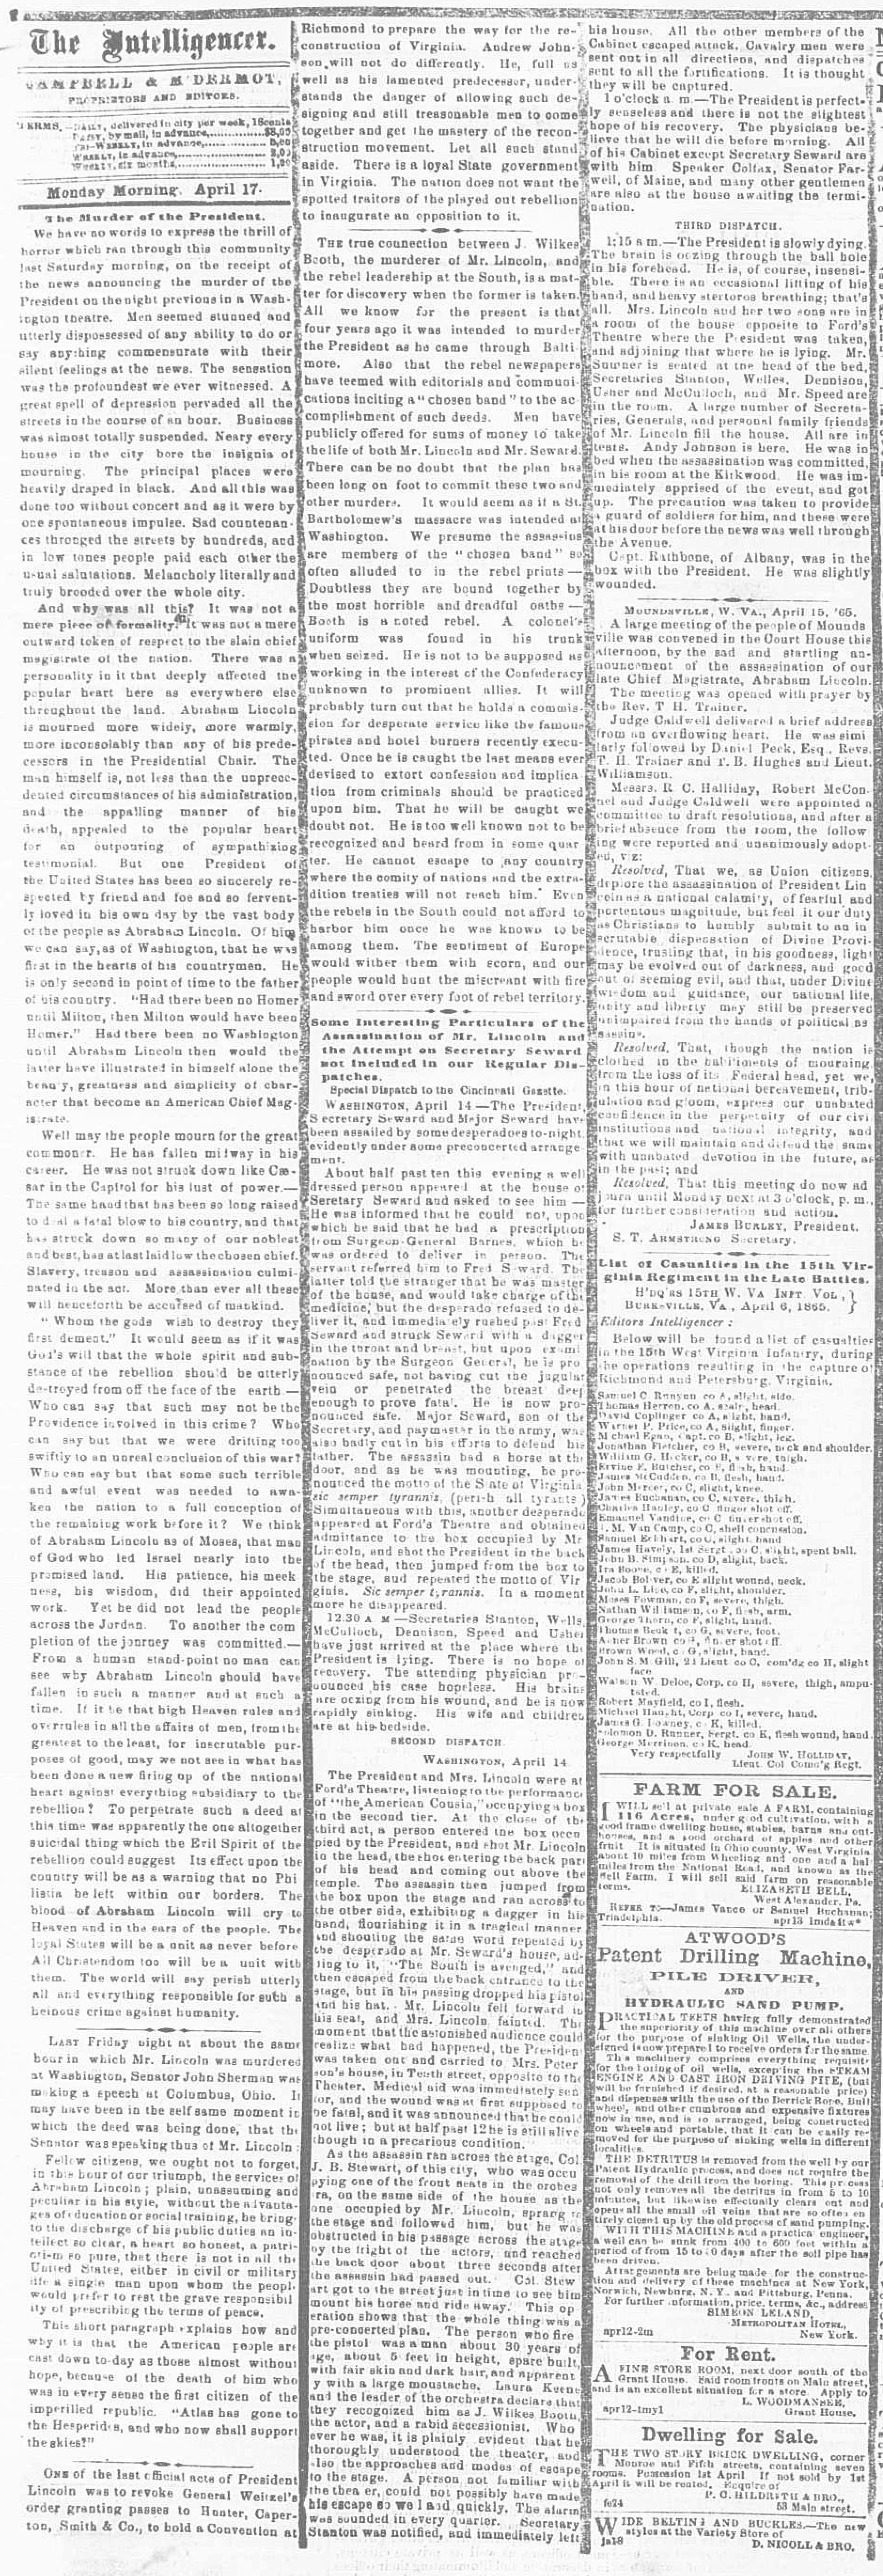 The Intelligencer, April 17, 1865